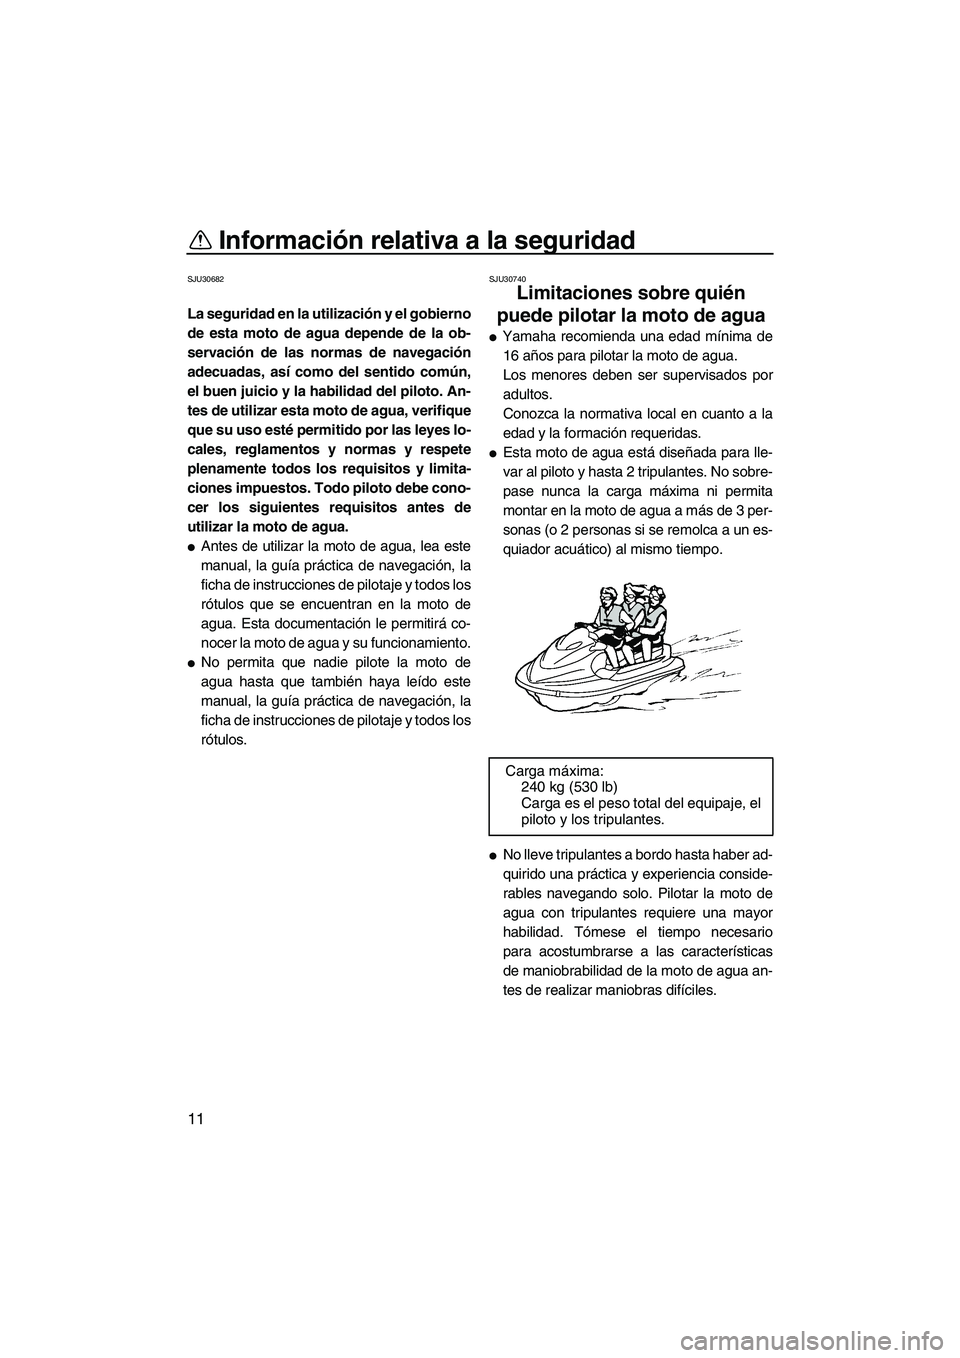 YAMAHA FX HO CRUISER 2010  Manuale de Empleo (in Spanish) Información relativa a la seguridad
11
SJU30682
La seguridad en la utilización y el gobierno
de esta moto de agua depende de la ob-
servación de las normas de navegación
adecuadas, así como del s